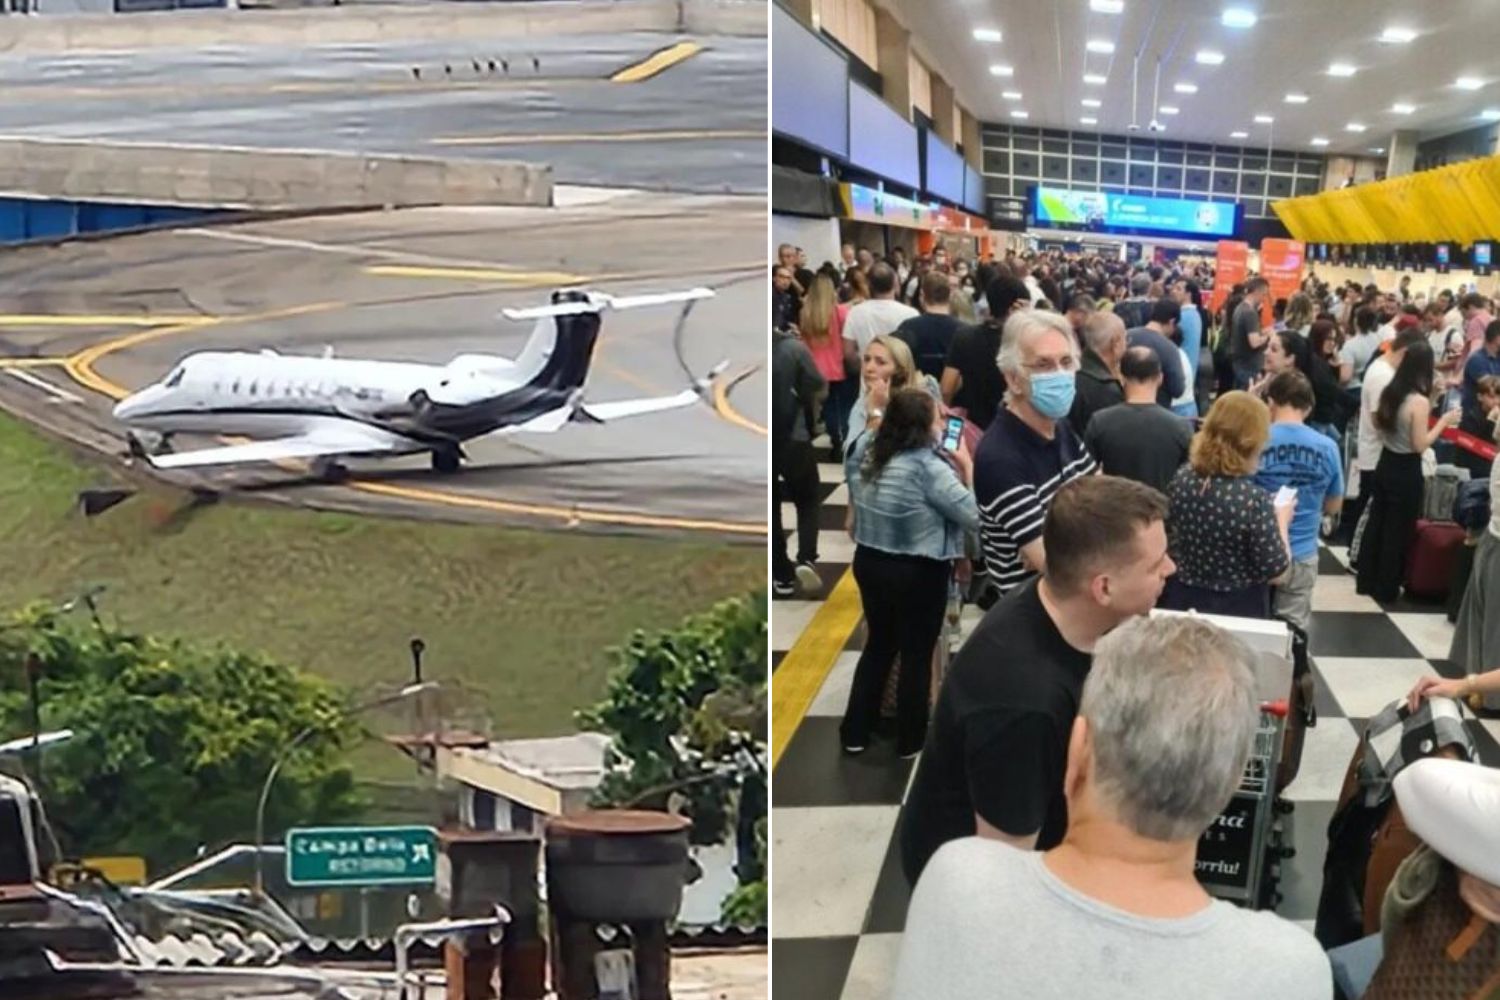 Problema em avião da Gol fecha pista do aeroporto de Congonhas